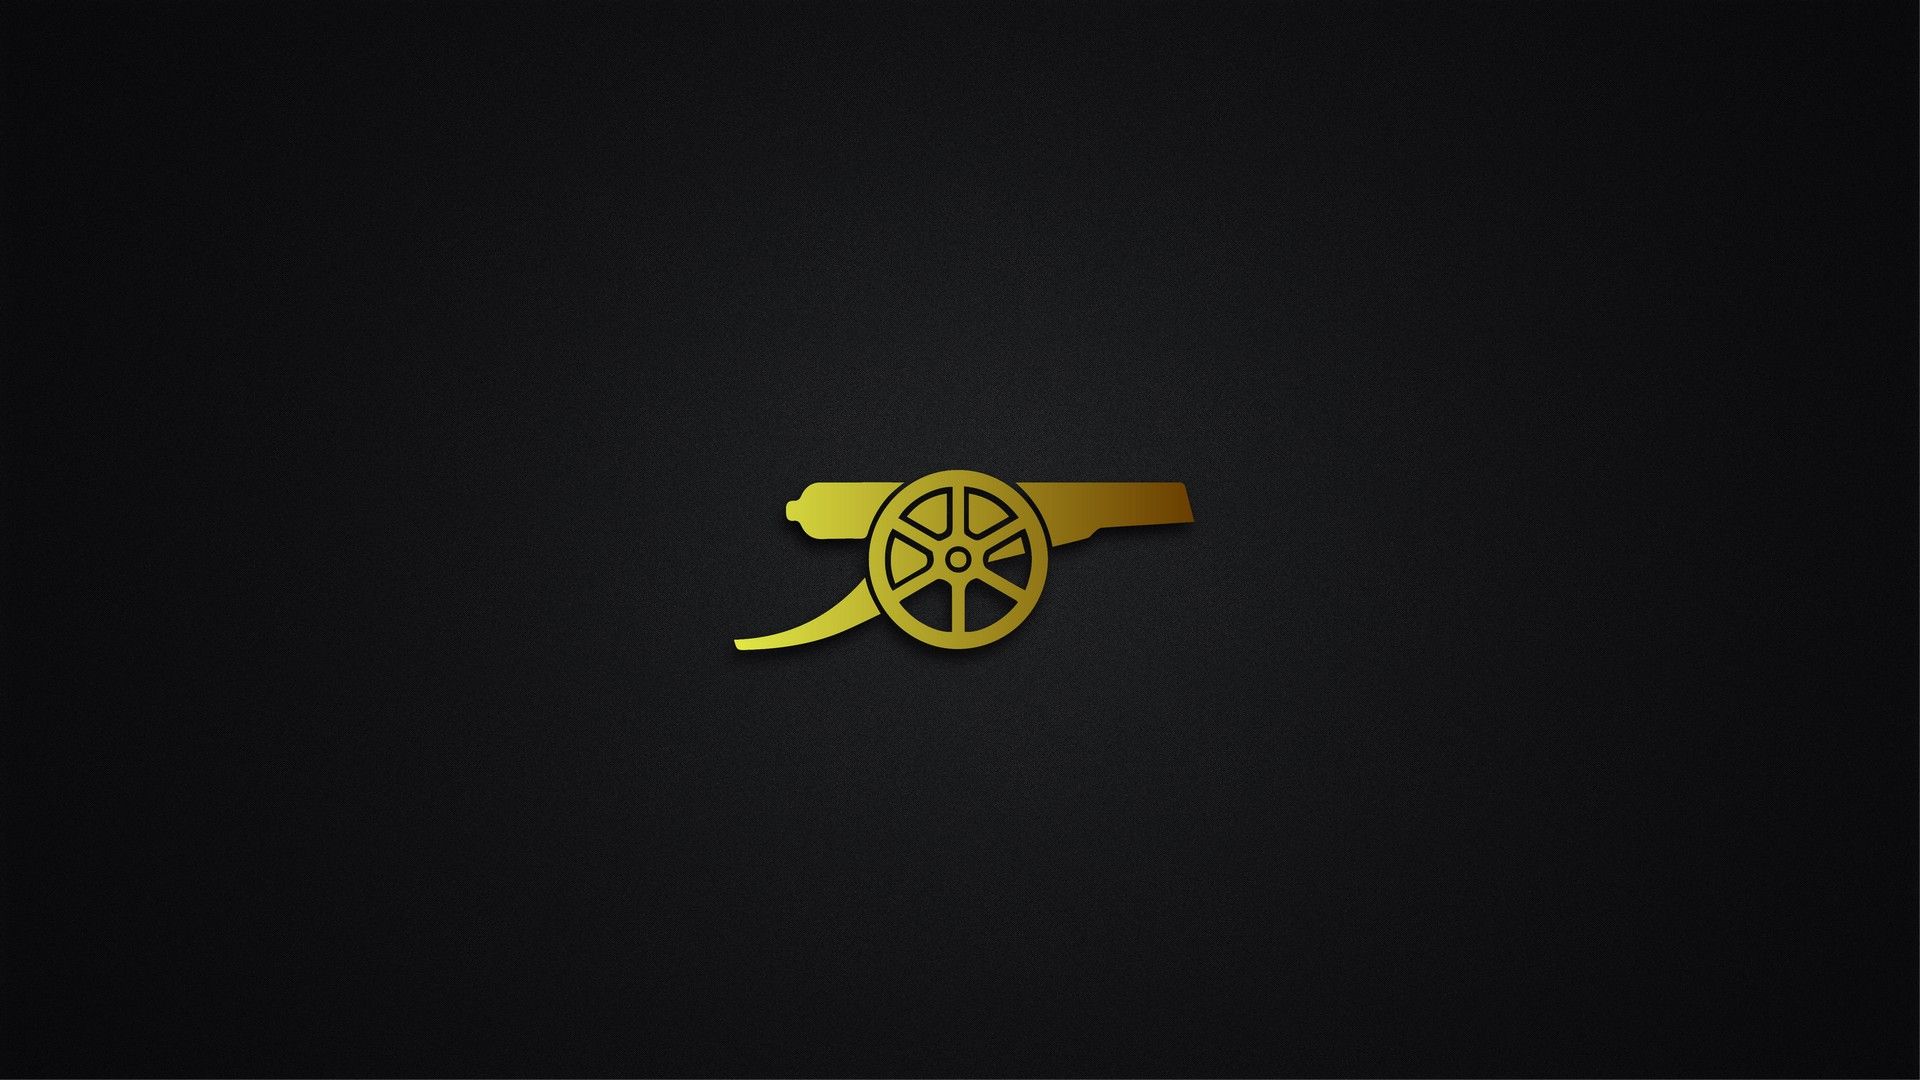 Arsenal FC Logo Wallpaper HD 1920x1080